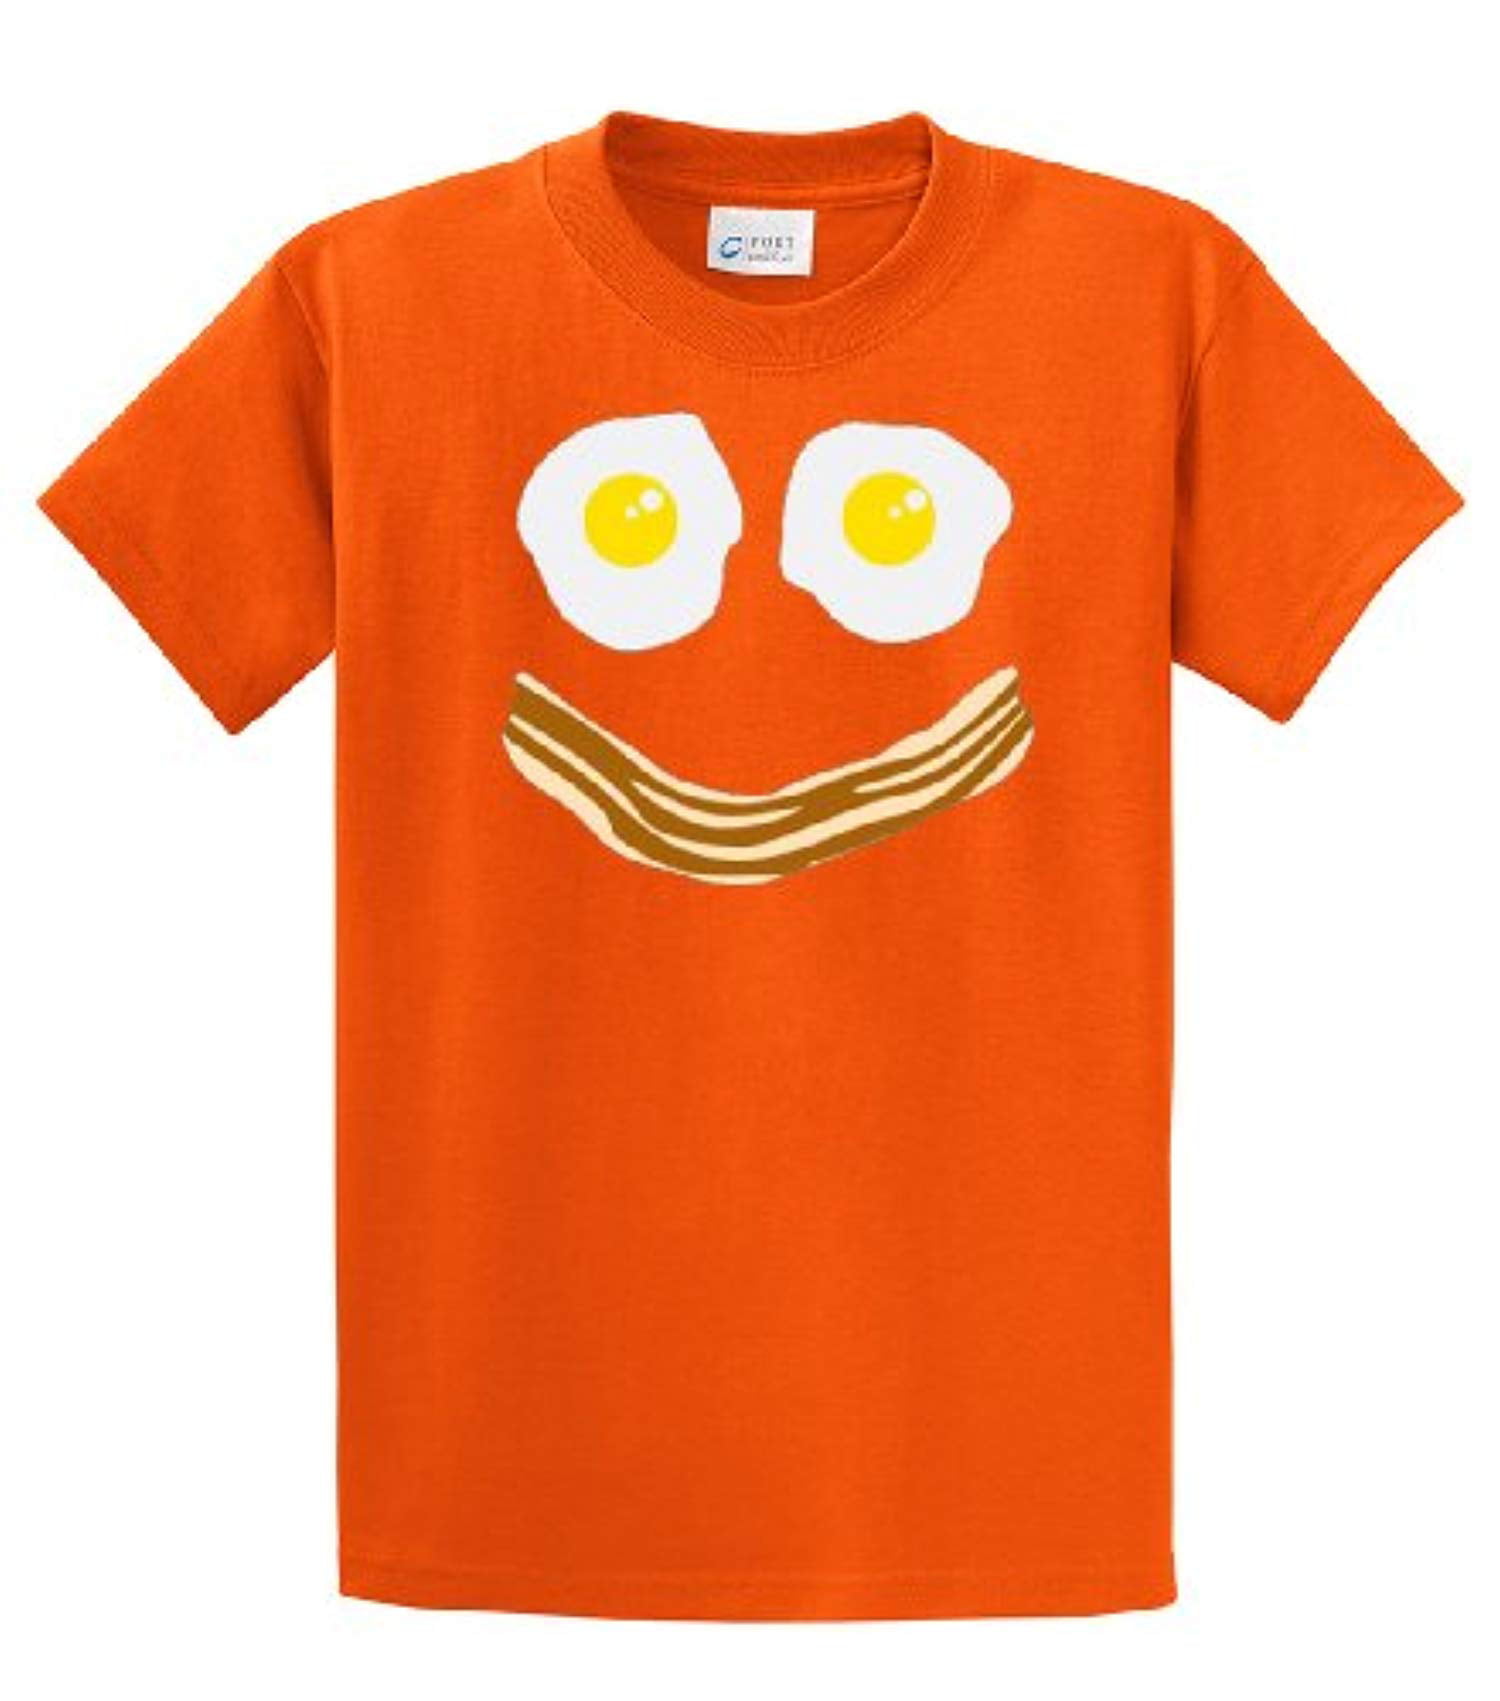 Bacon & Eggs Smiley Face T-shirt-orange-4xl - Walmart.com